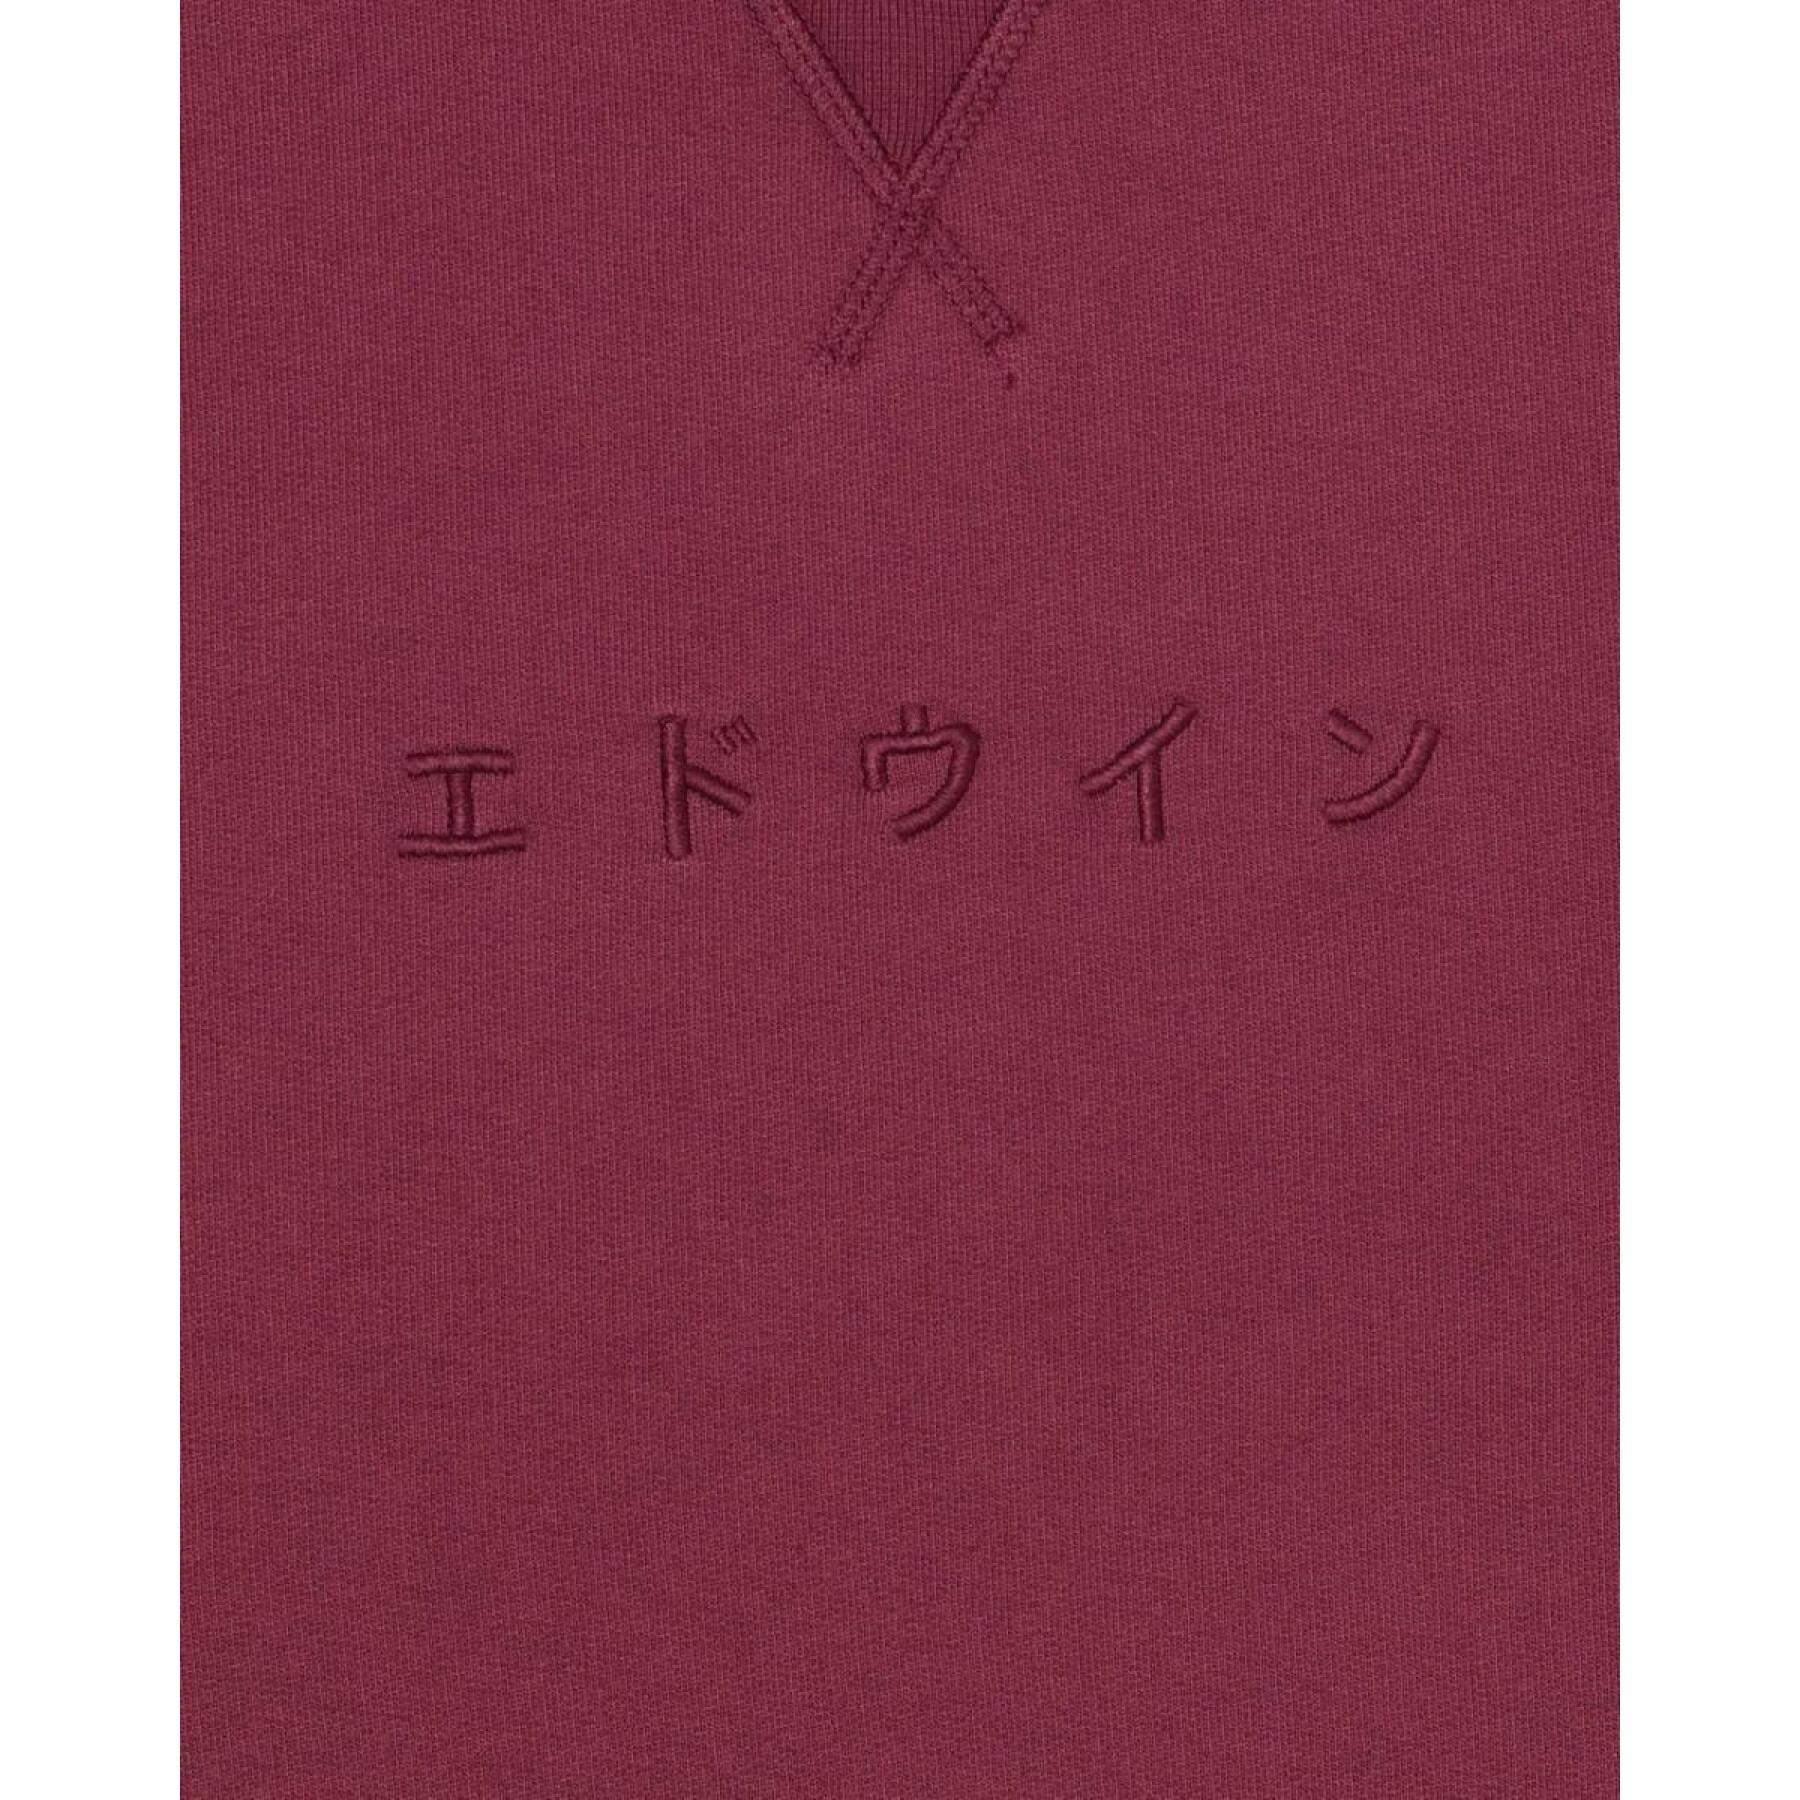 Bluza z kapturem Edwin katakana